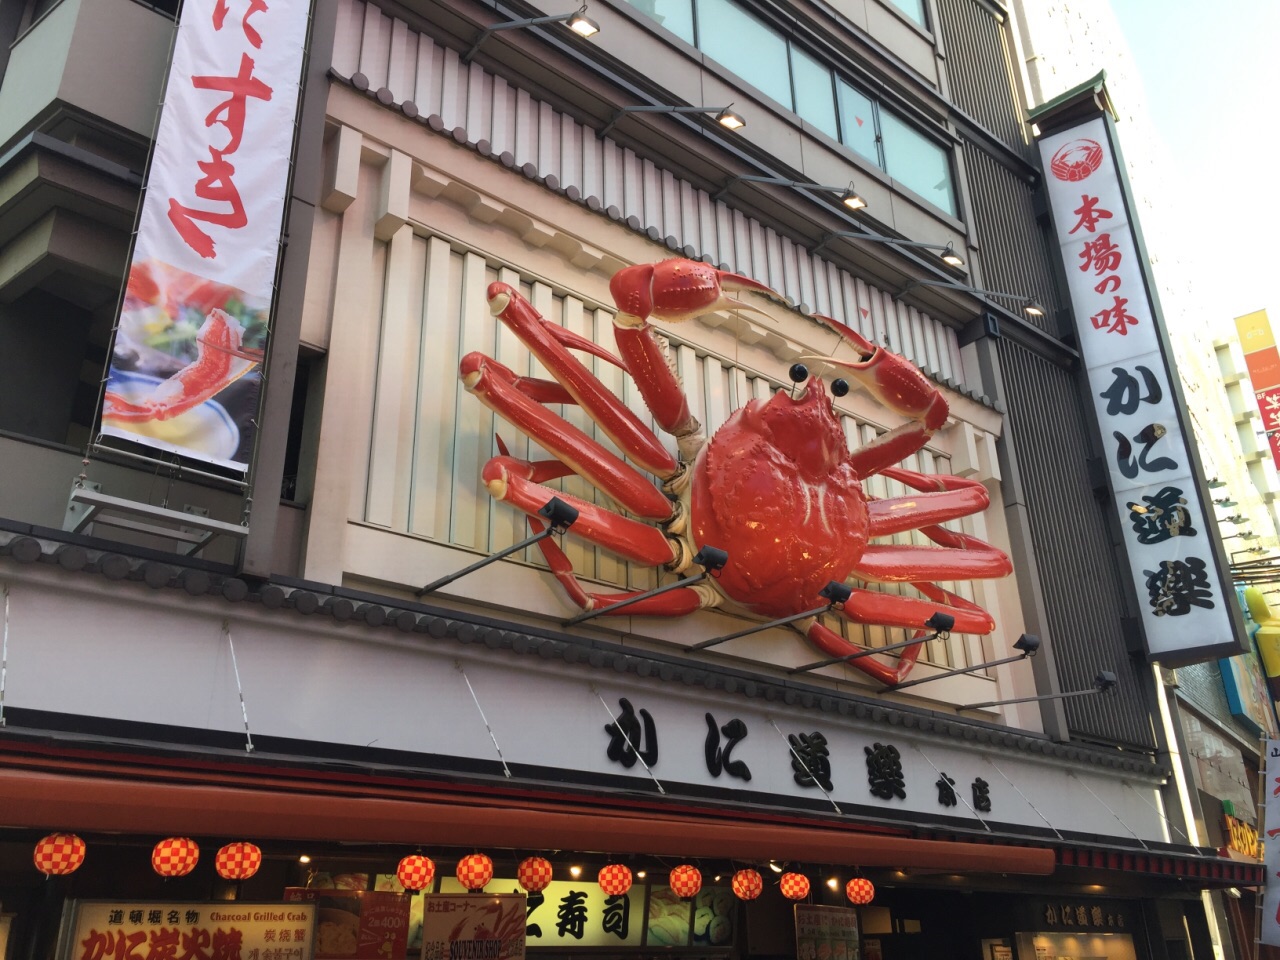 【携程美食林】大阪蟹道乐(道顿堀中店)餐馆,口味新鲜,种类很多